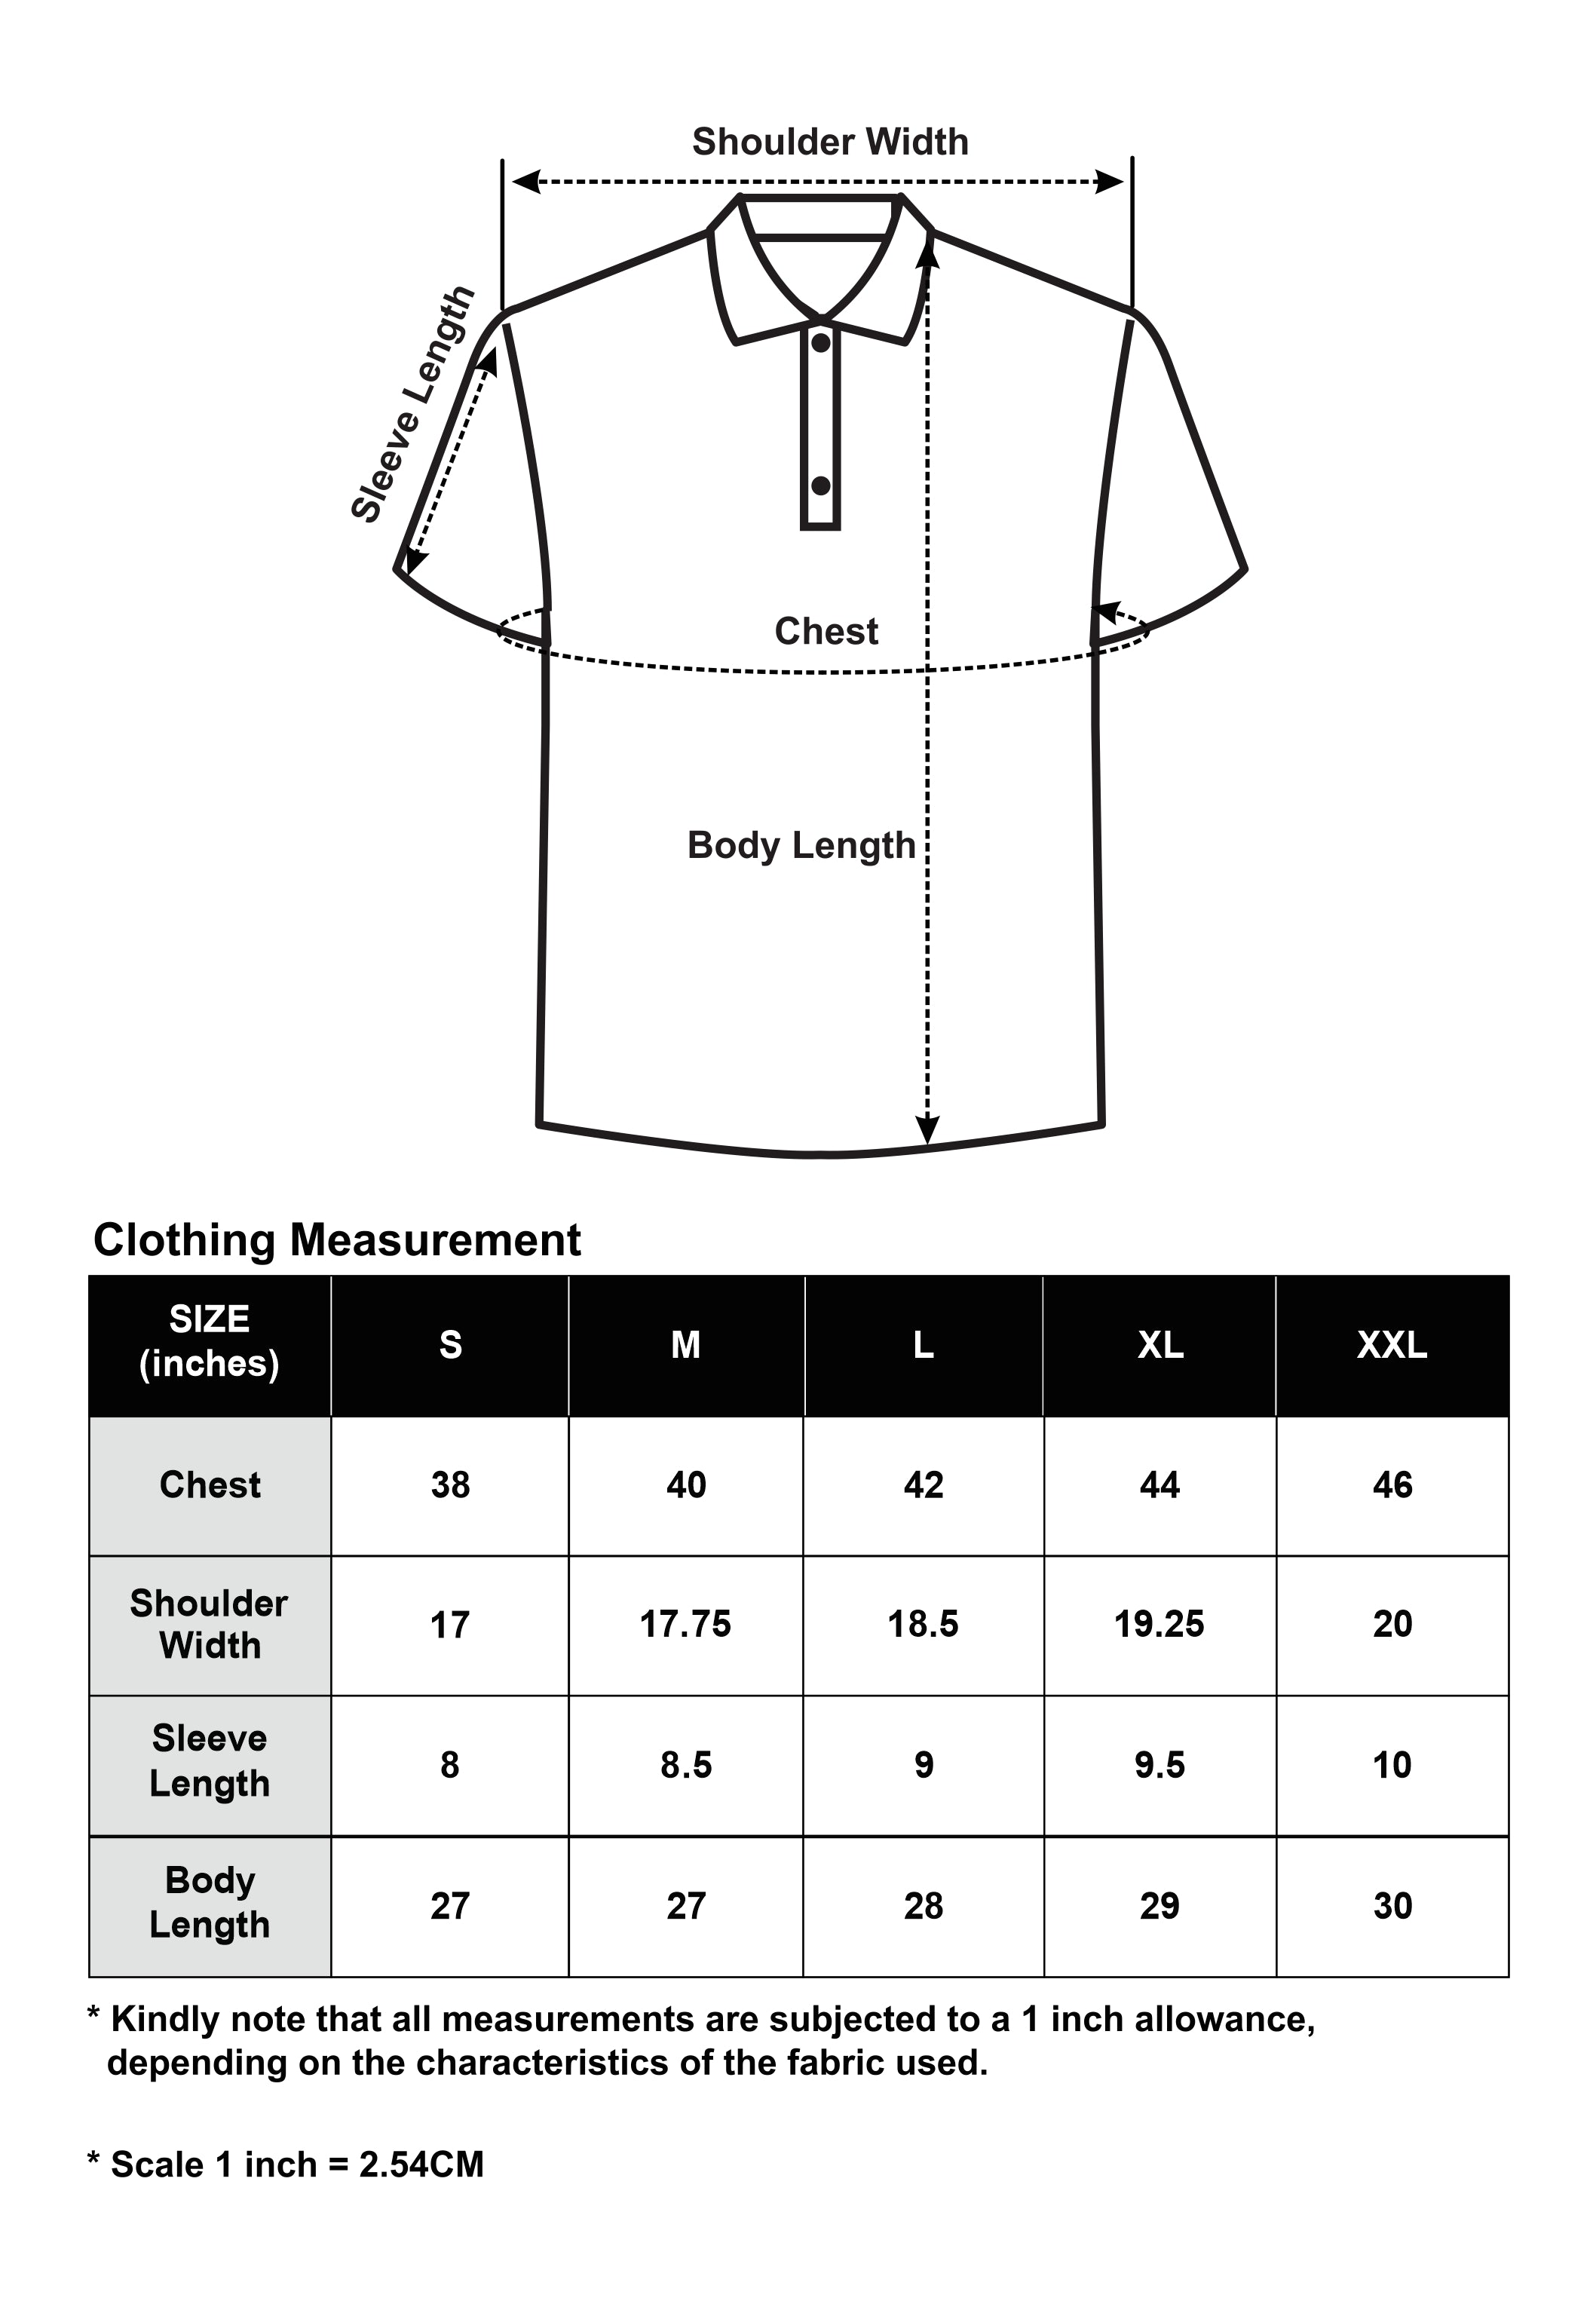 CTH unlimited Liquid Ammonia Yarn  Short Sleeve Polo Shirt - CU-70062